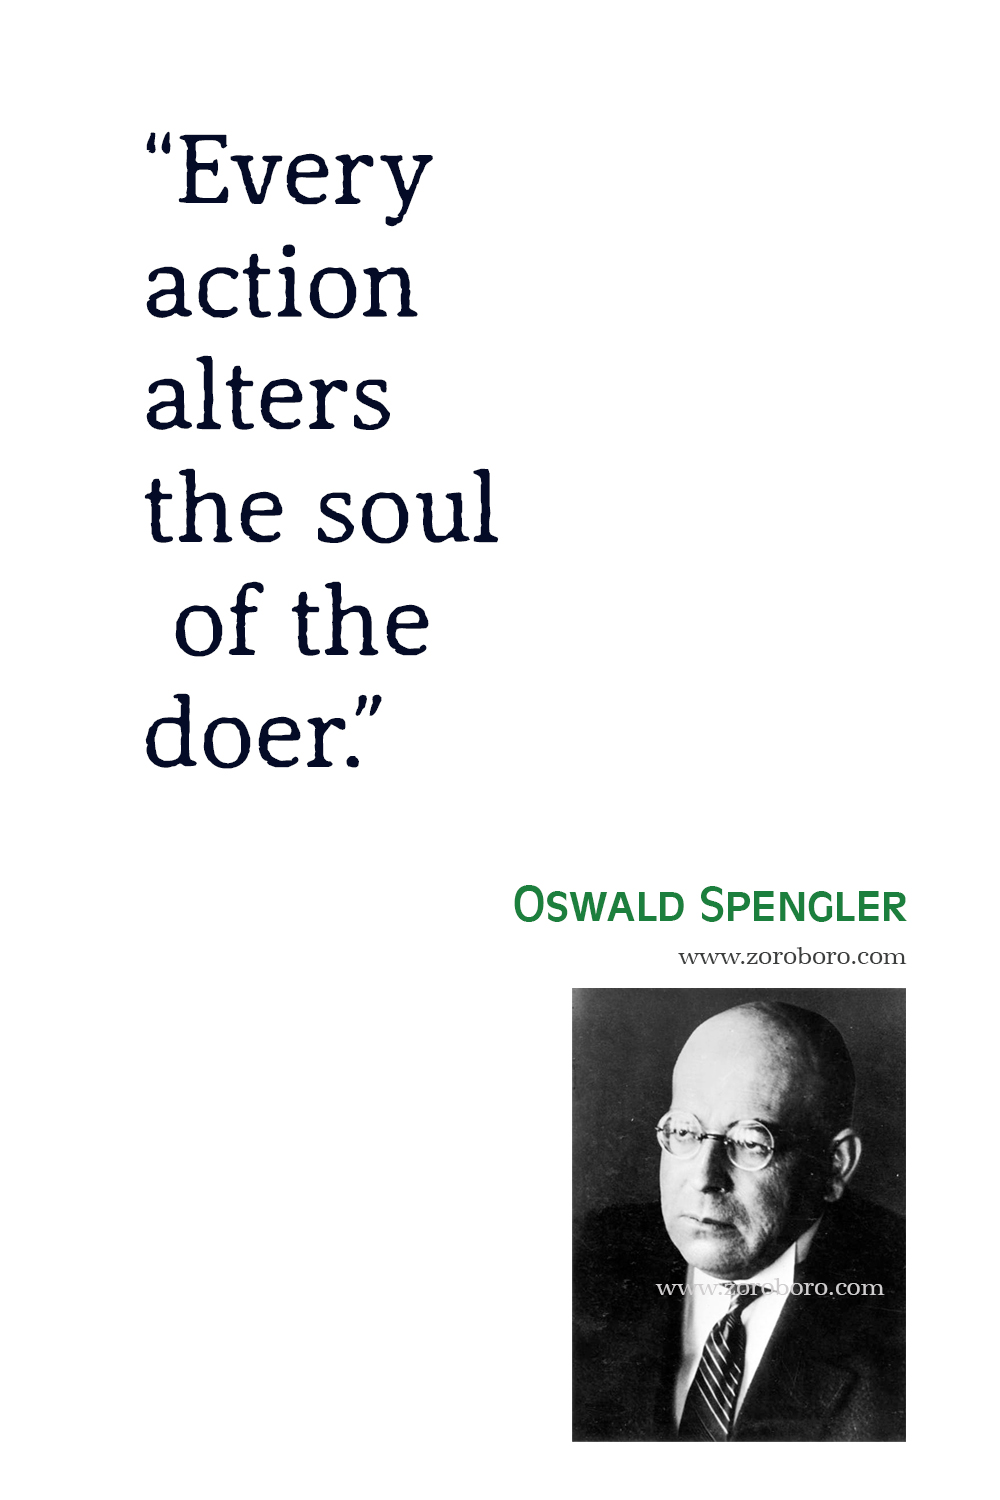 Oswald Spengler Quotes, Oswald Spengler The Decline of the West Quotes, Oswald Spengler Books, Theory, Oswald Spengler Philosophy